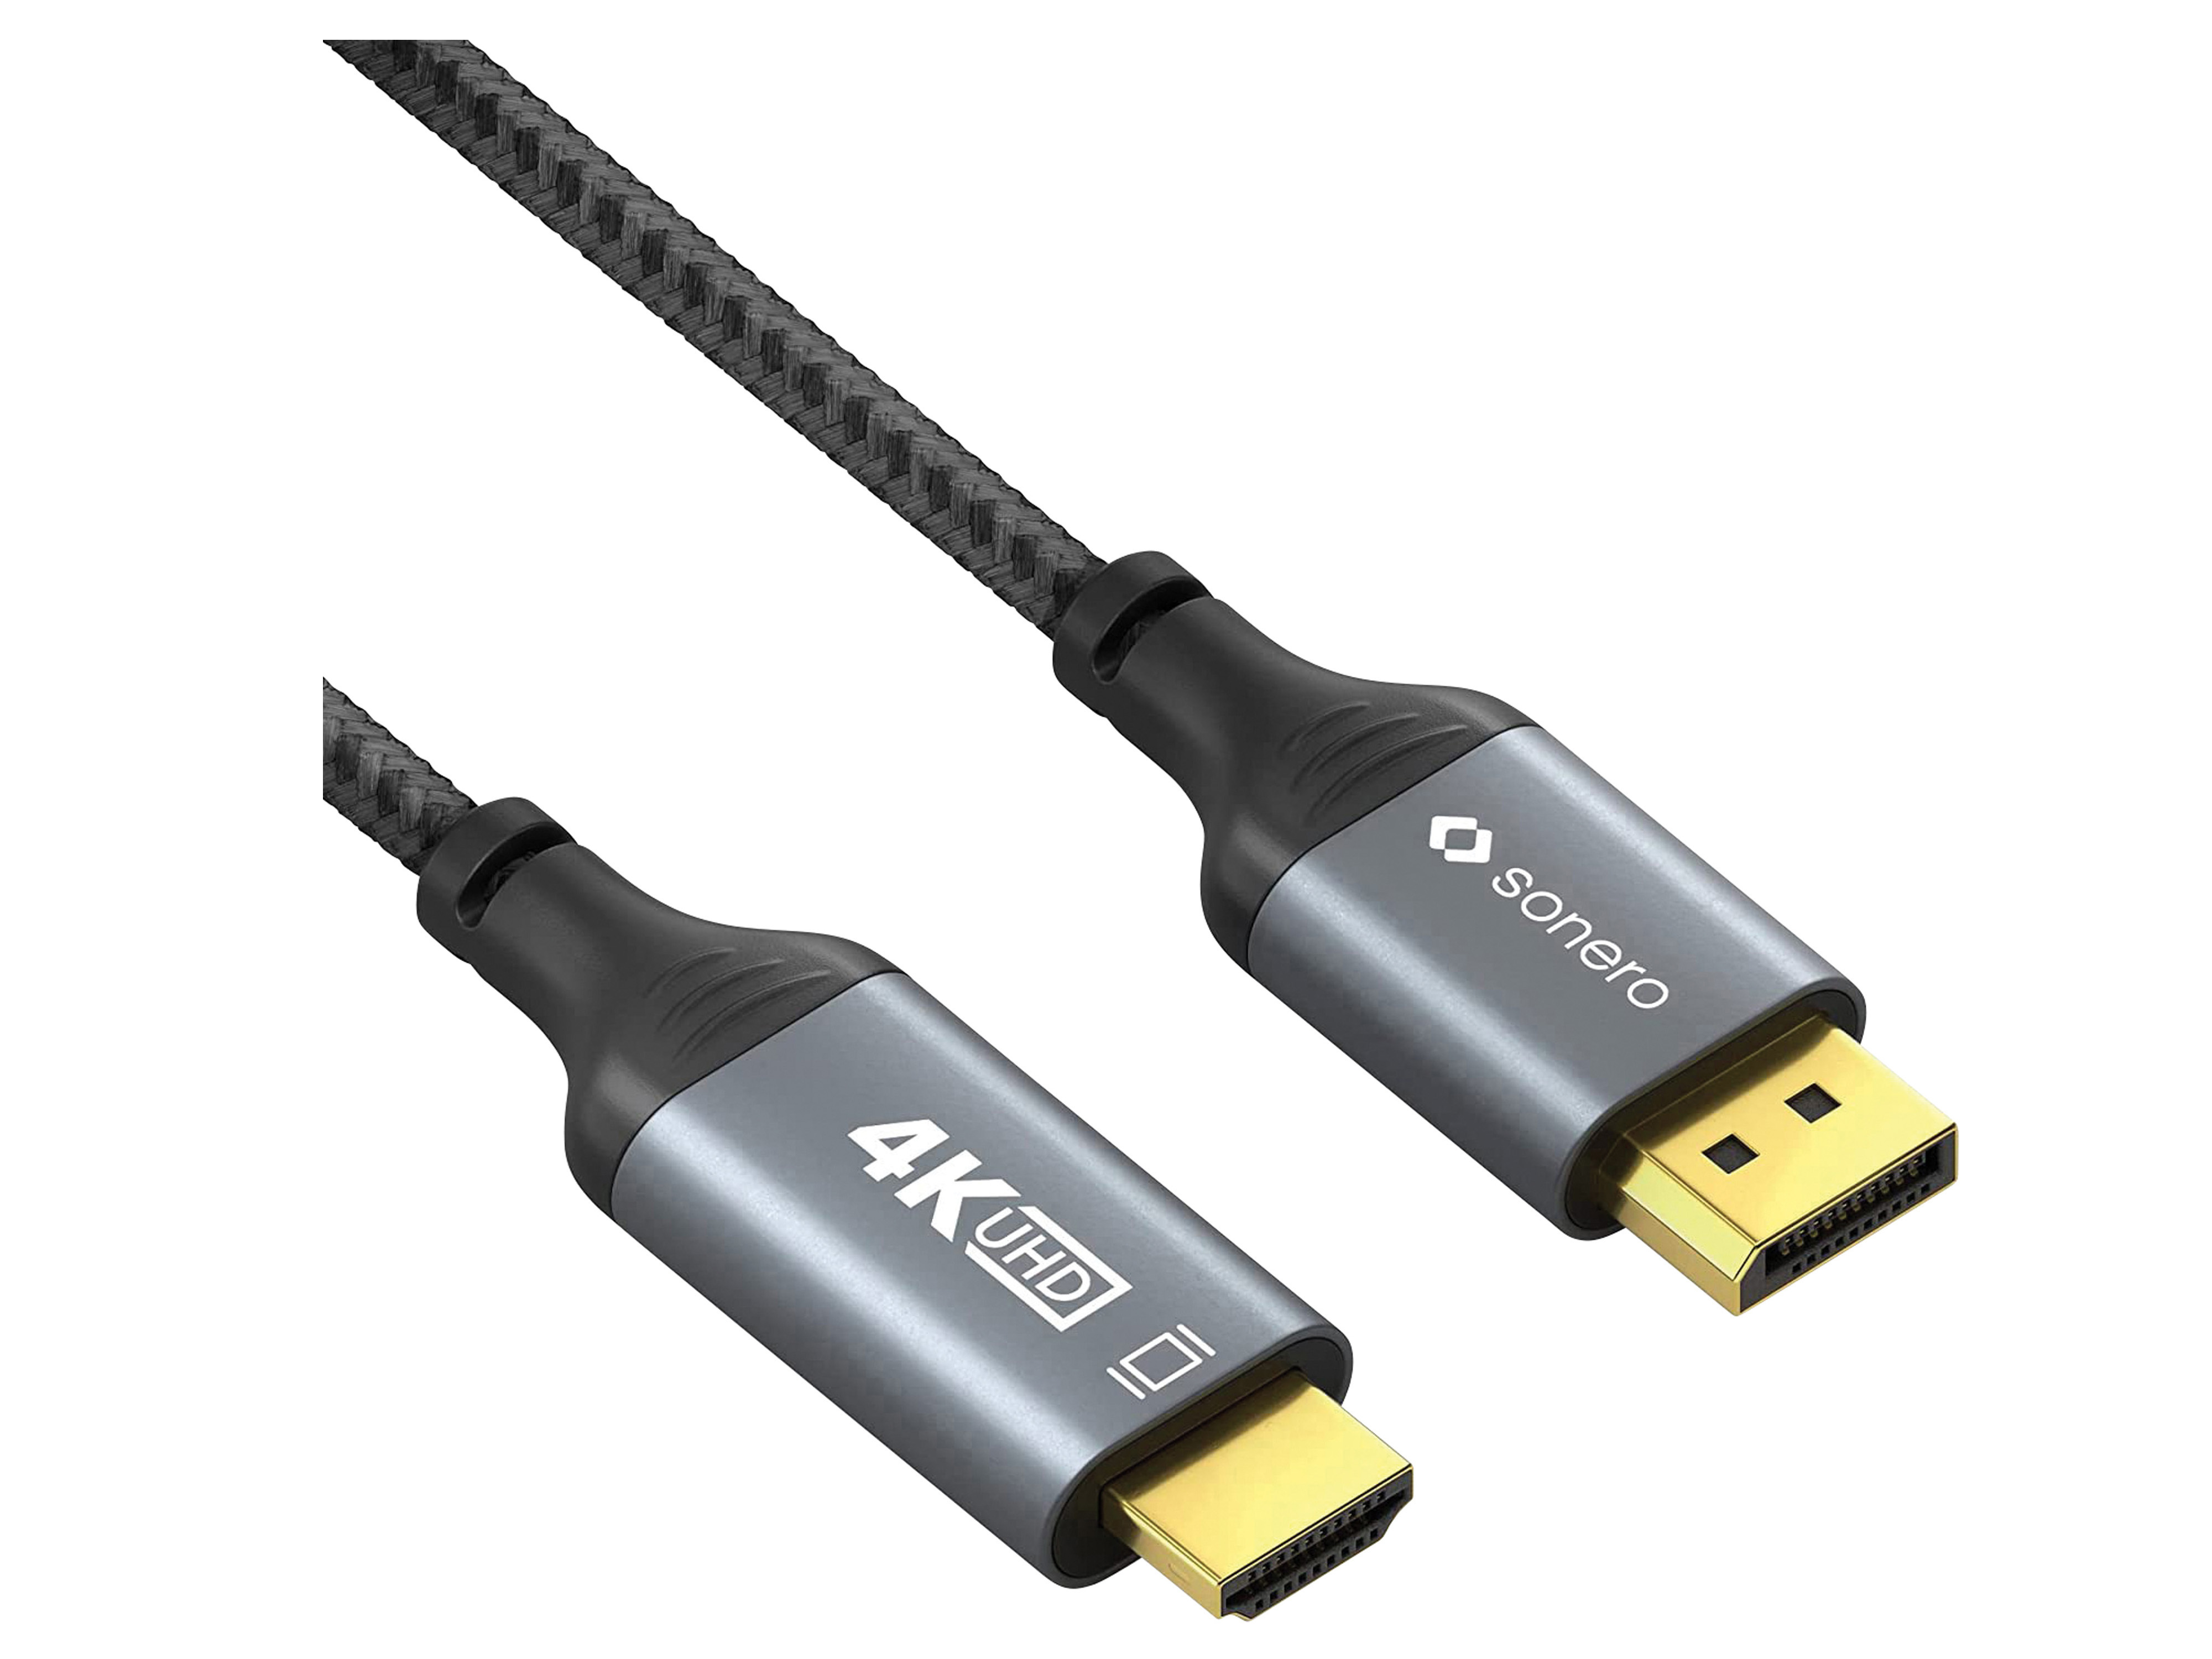 SONERO DisplayPort-Kabel, DP/HDMI, Stecker/Stecker, 4K60, grau/schwarz, 2 m